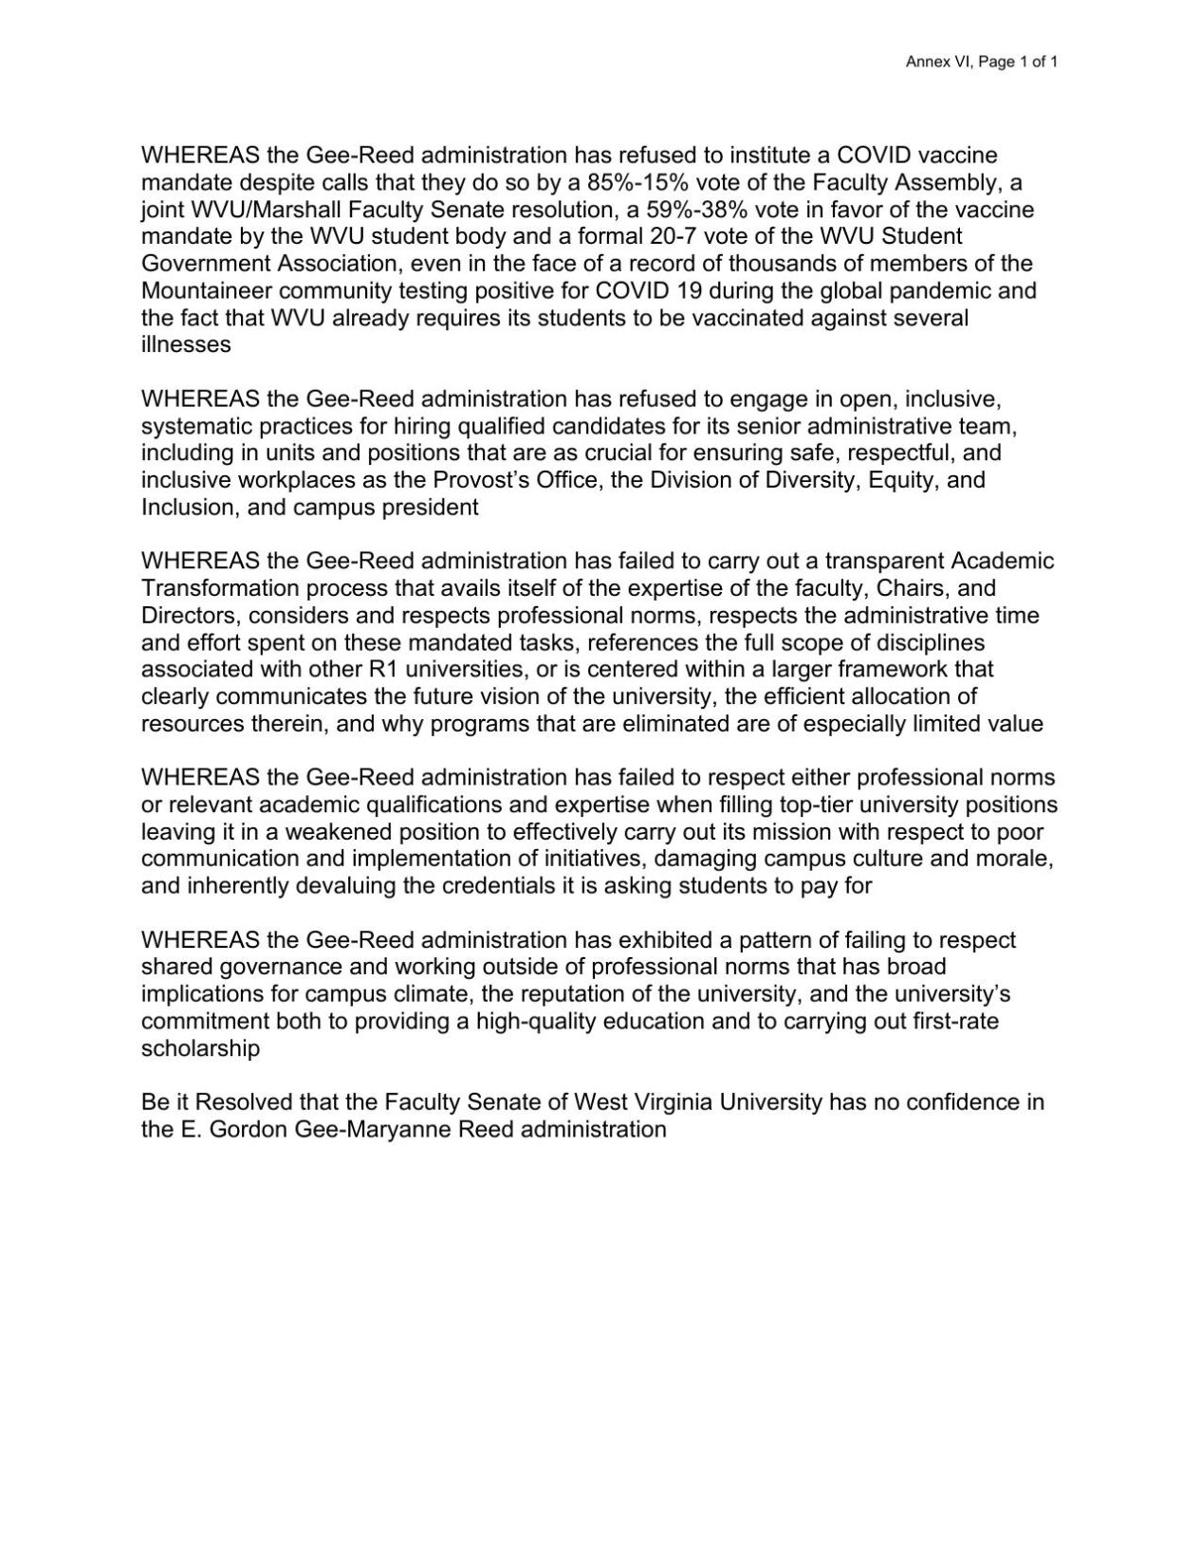 WVU Faculty Senate no-confidence resolution